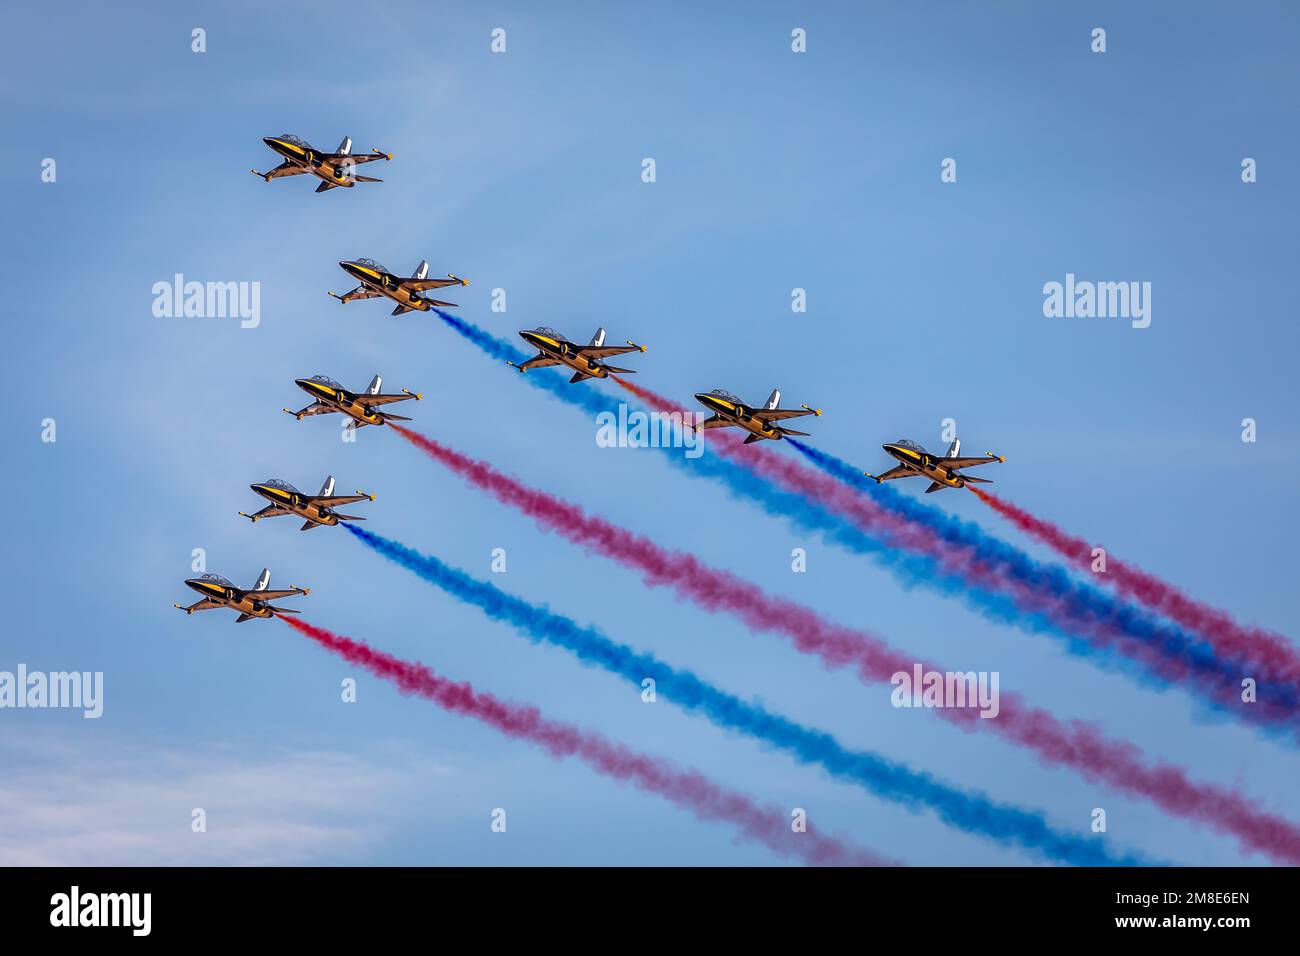 Équipe aérienne des Black Eagles de la Force aérienne de la République de Corée, Old Warden Airfield, Biggleswade, Bedfordshire, Royaume-Uni Banque D'Images